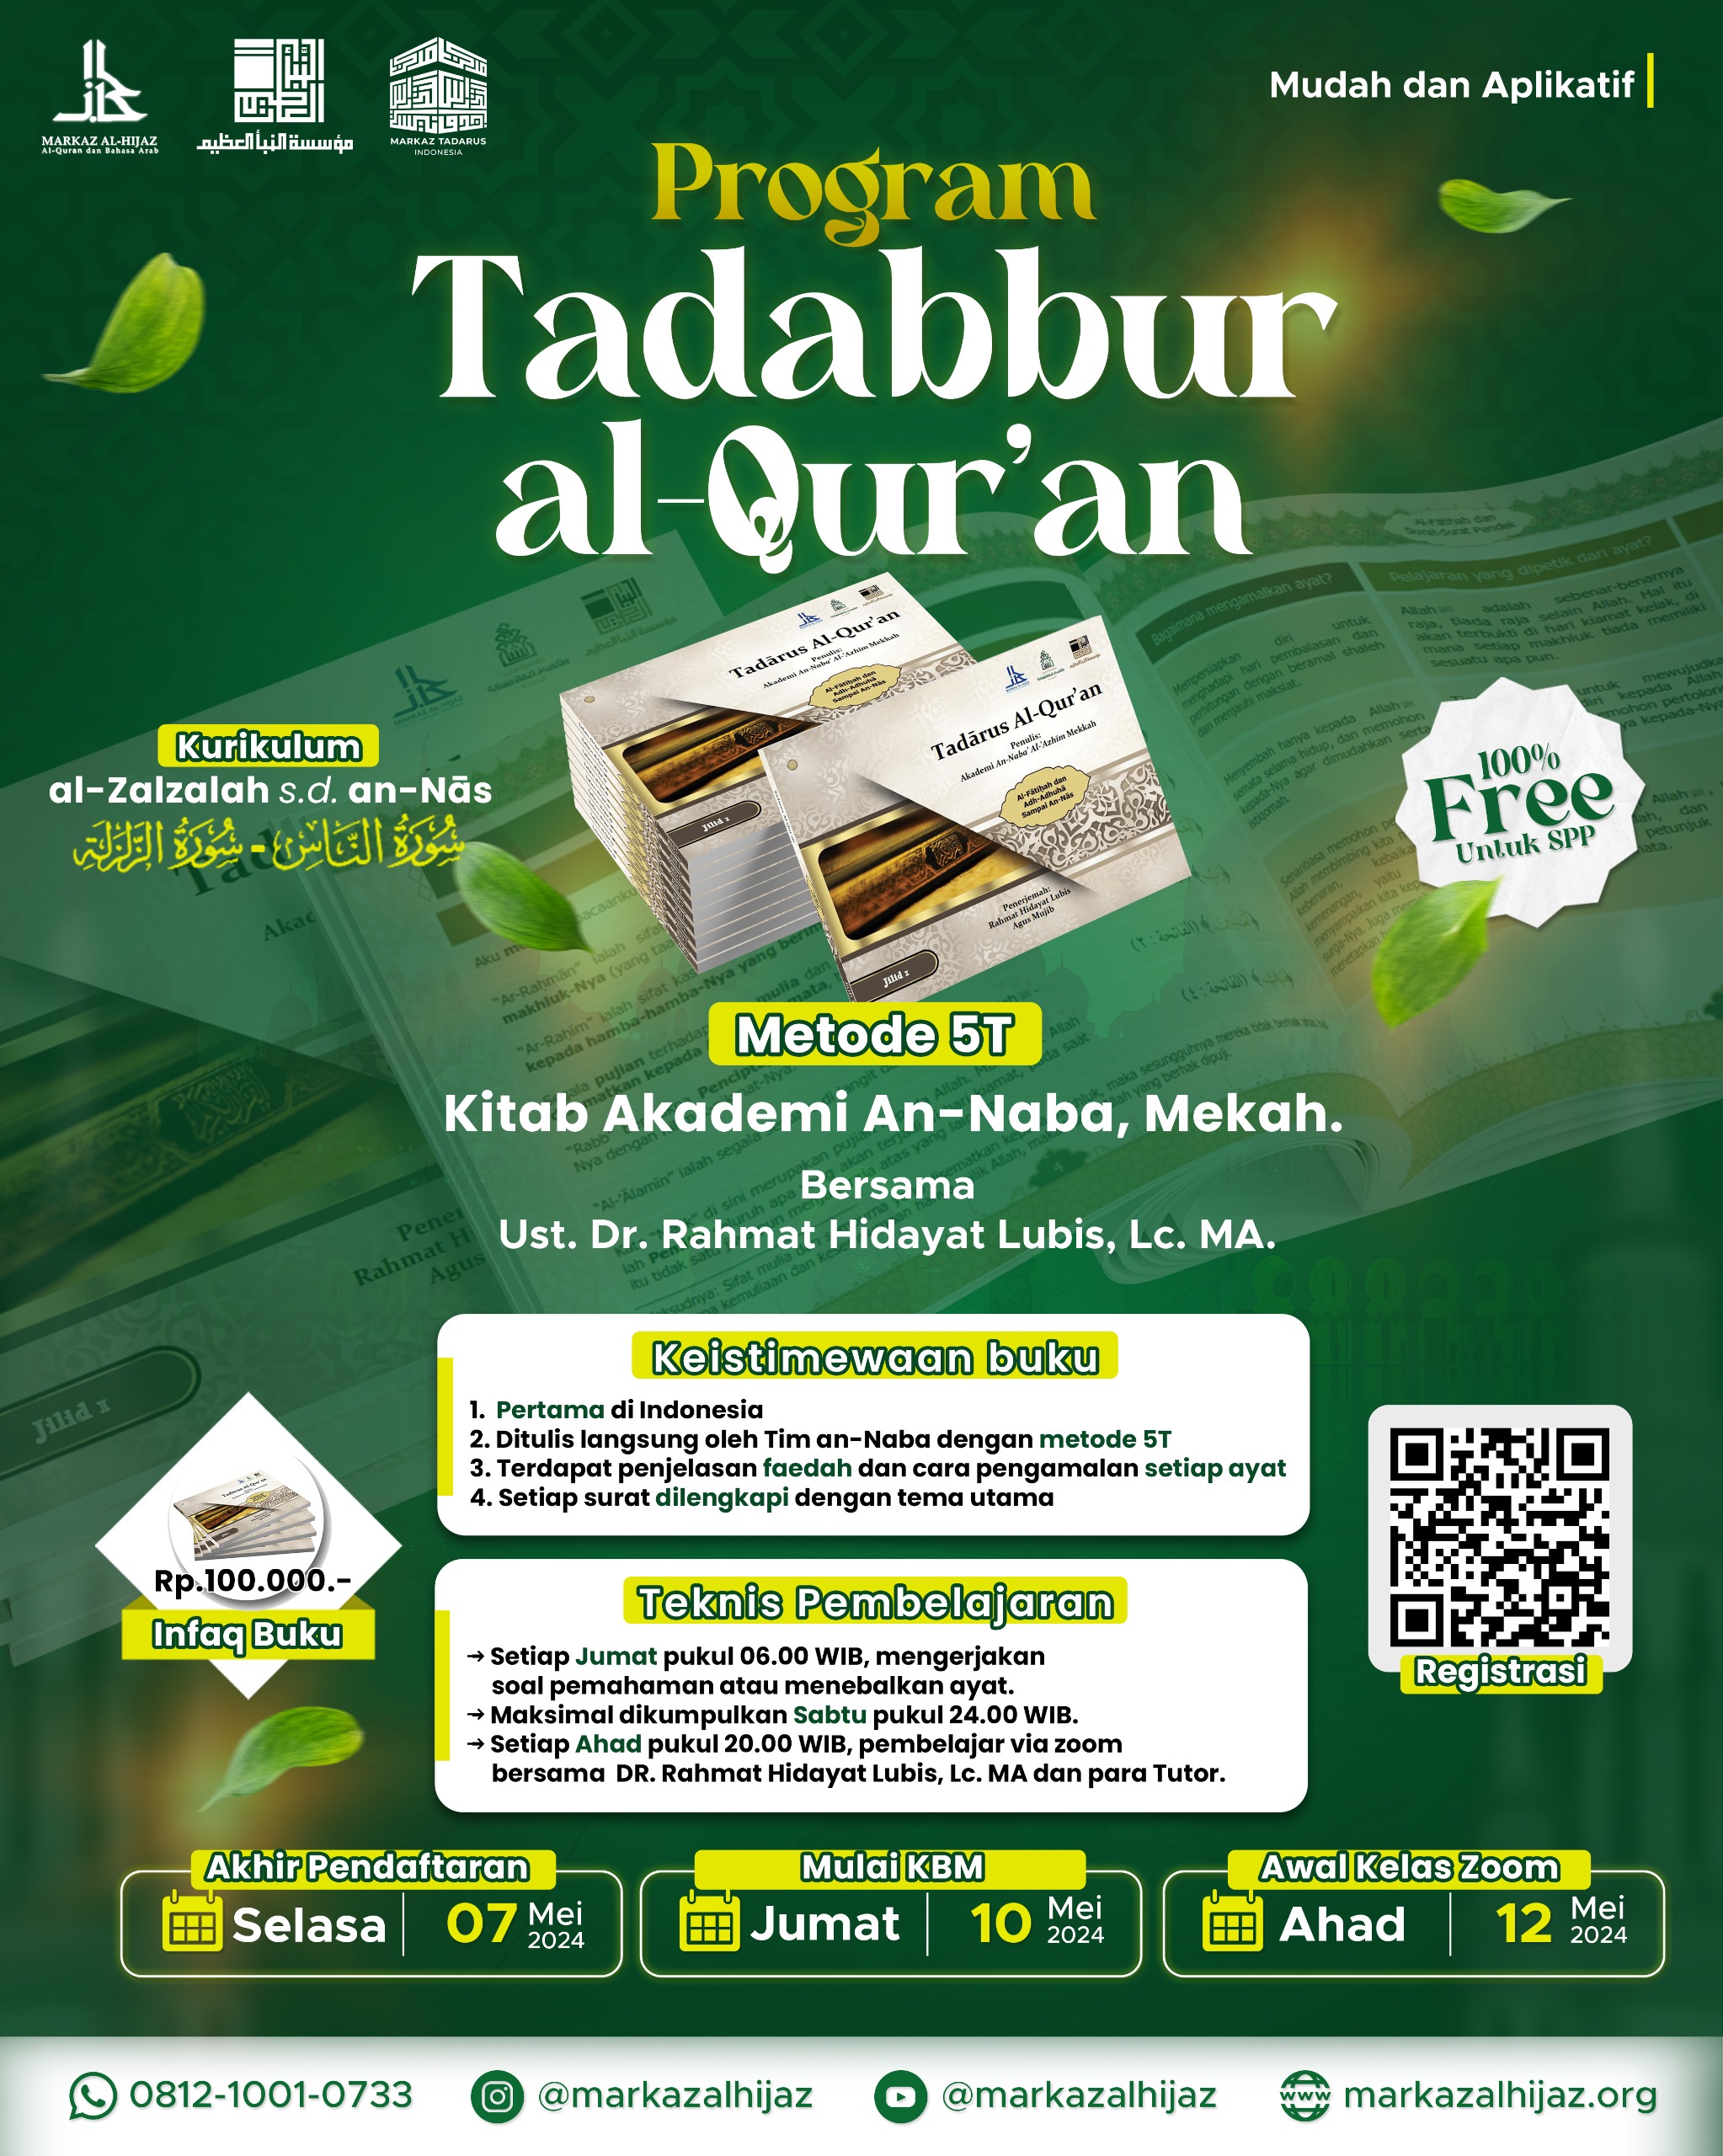 Tadabbur Al-Quran Majelis ke-9